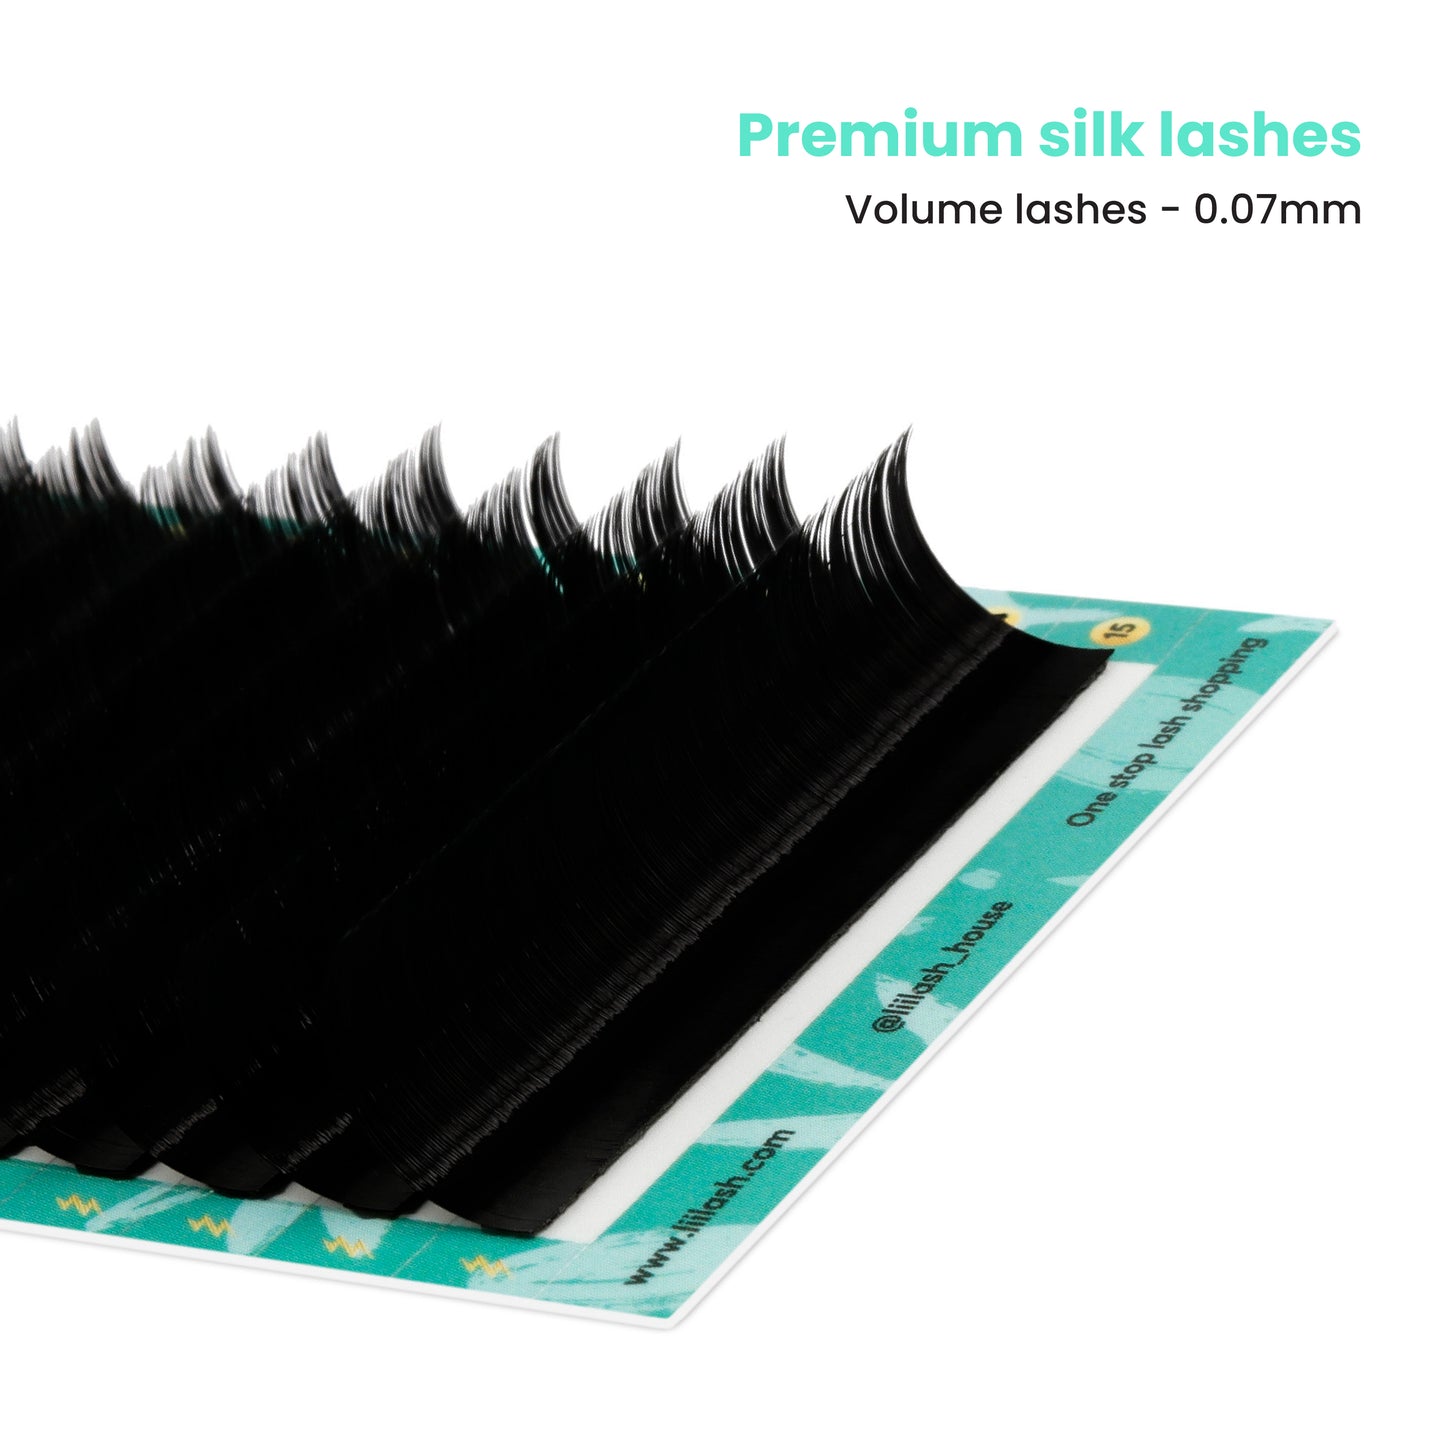 Premium Silk volume lashes 0.07mm